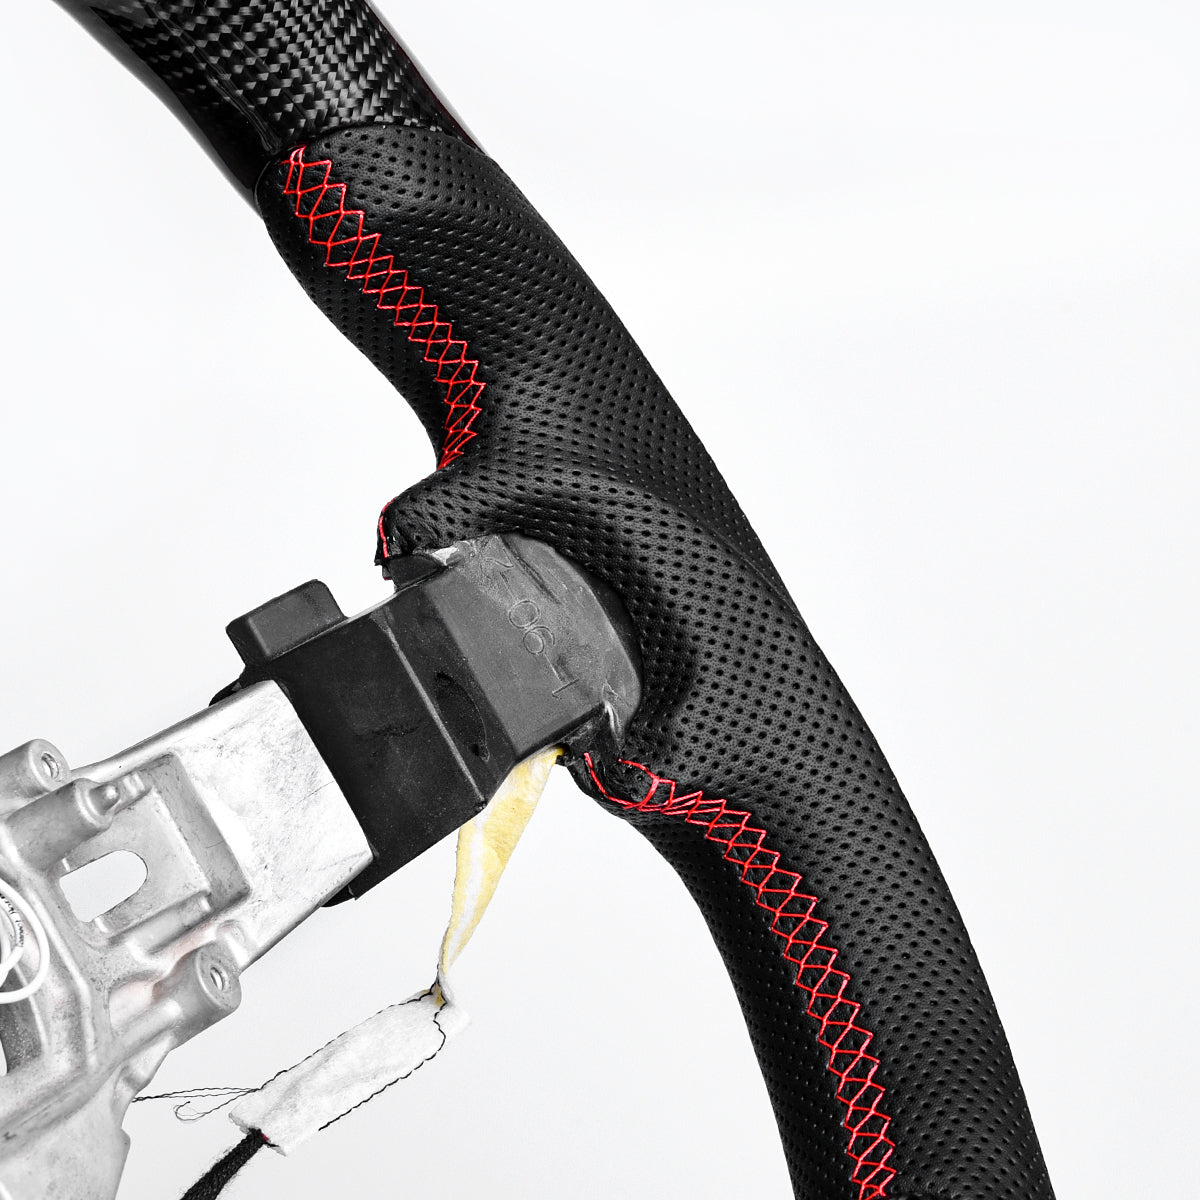 Revolve Carbon Fiber LED Steering Wheel 2012-2014 Dodge Challenger - revolvesteering